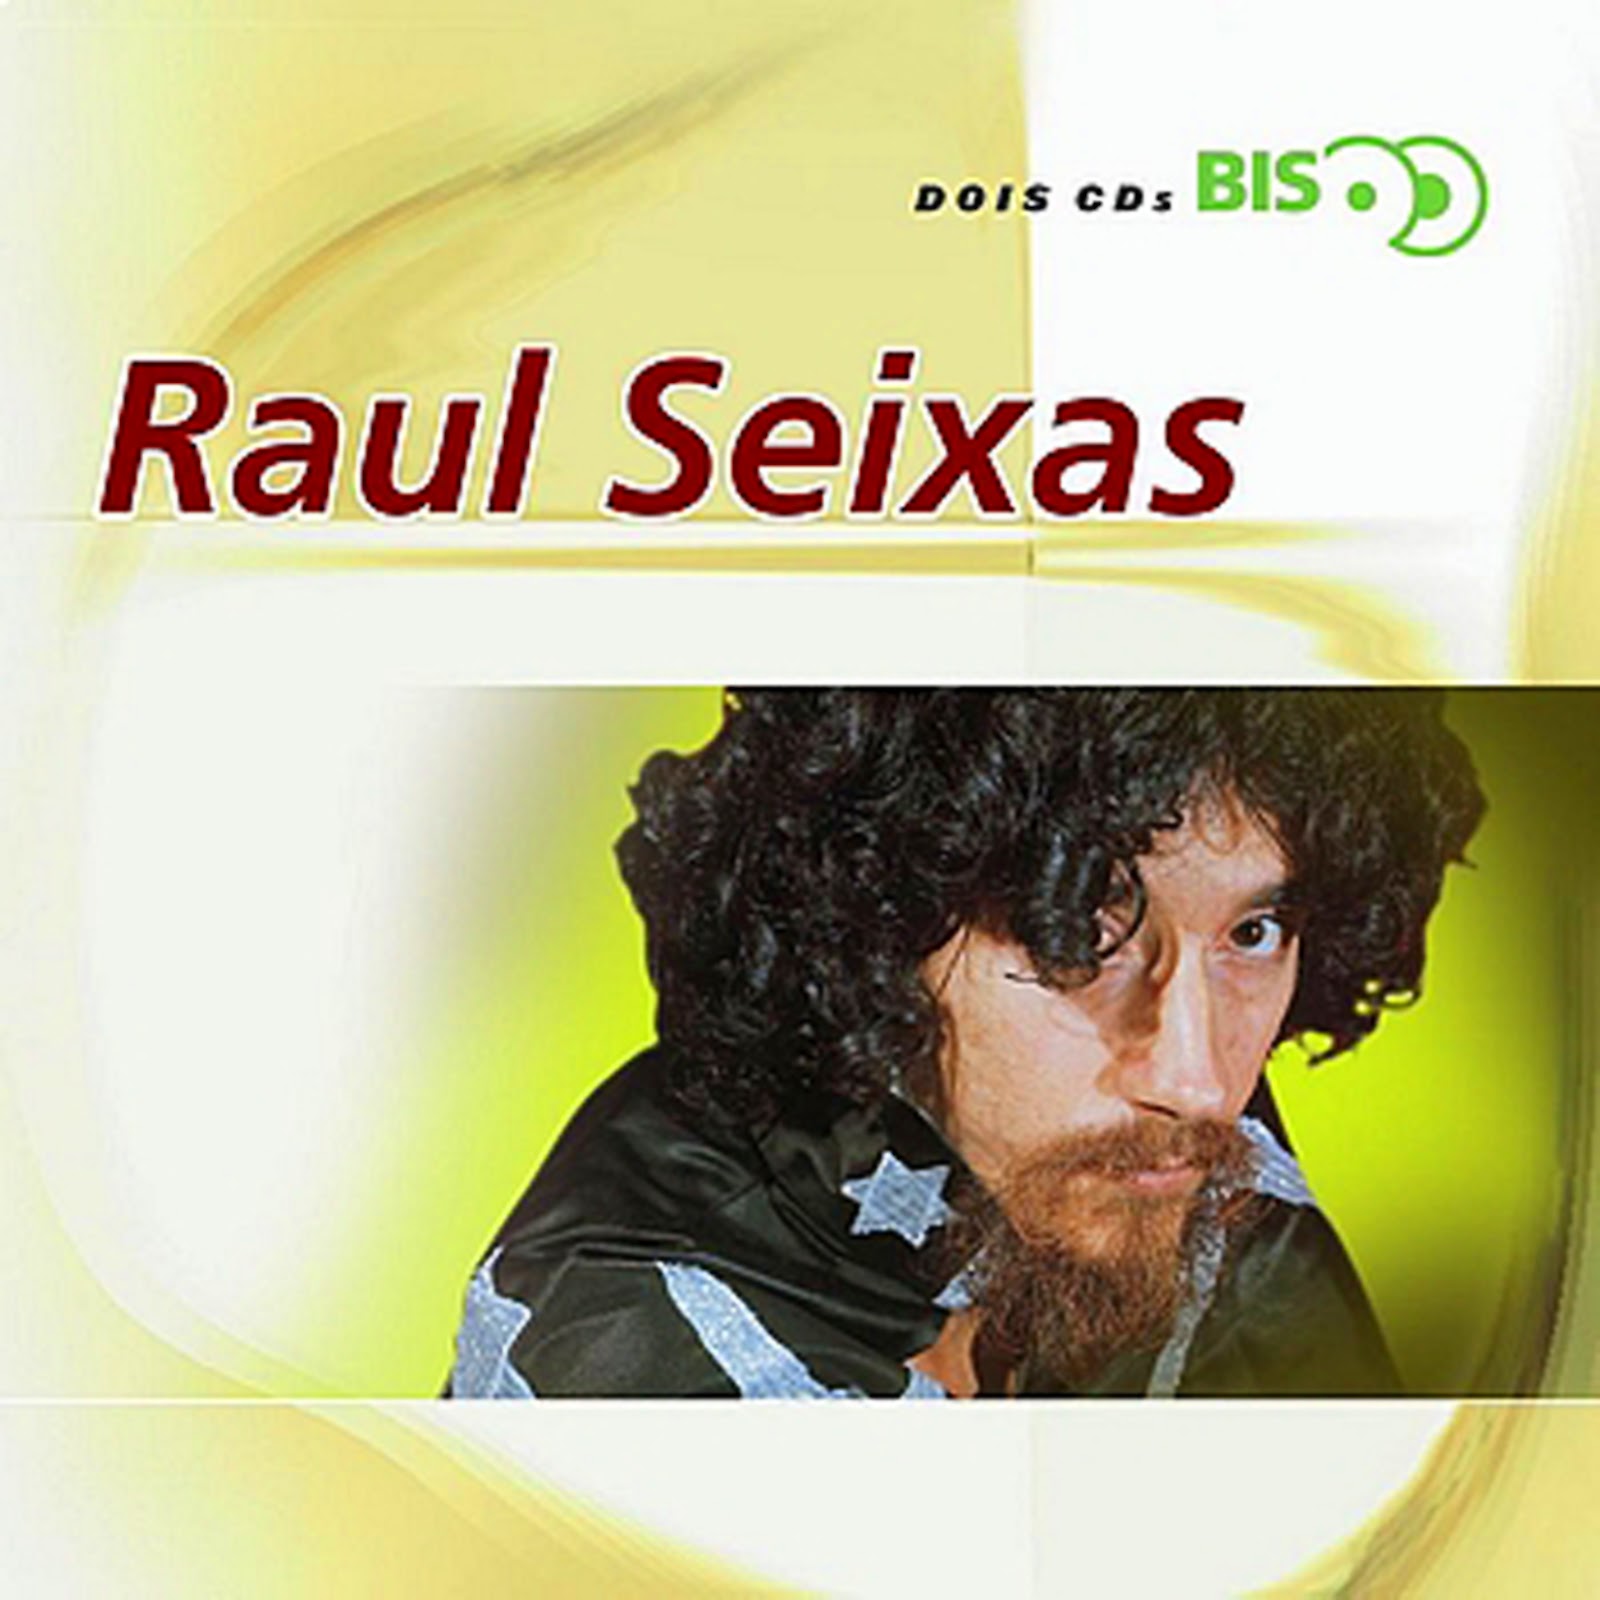 Raul Seixas   10   Brincadeira   CD 01   Coleção BIS